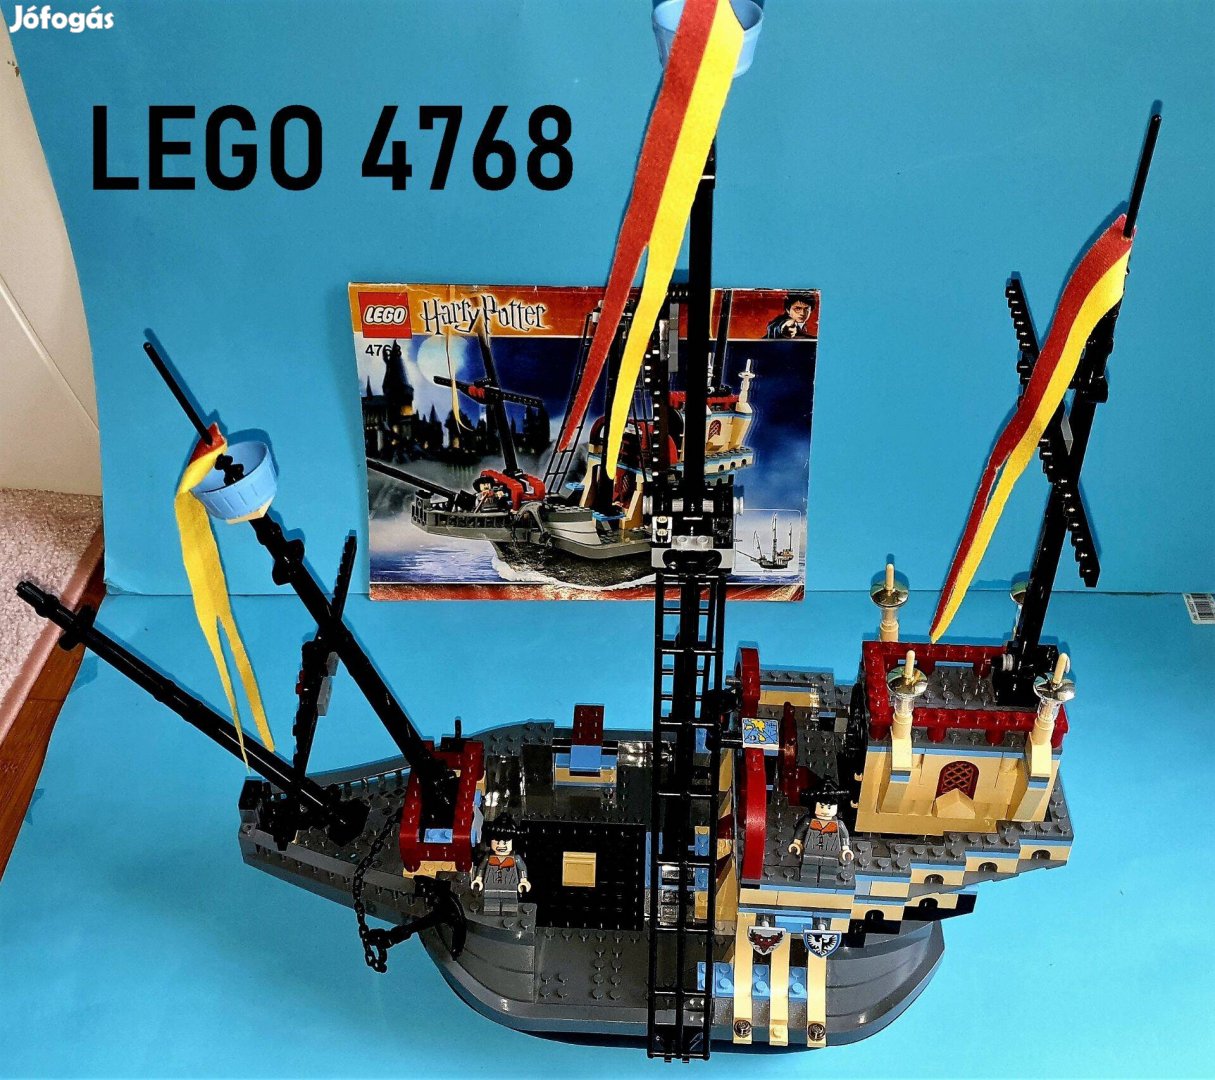 20 éves LEGO Harry Potter 4768 Durmstrang Ship, hiánytalan, útmutató